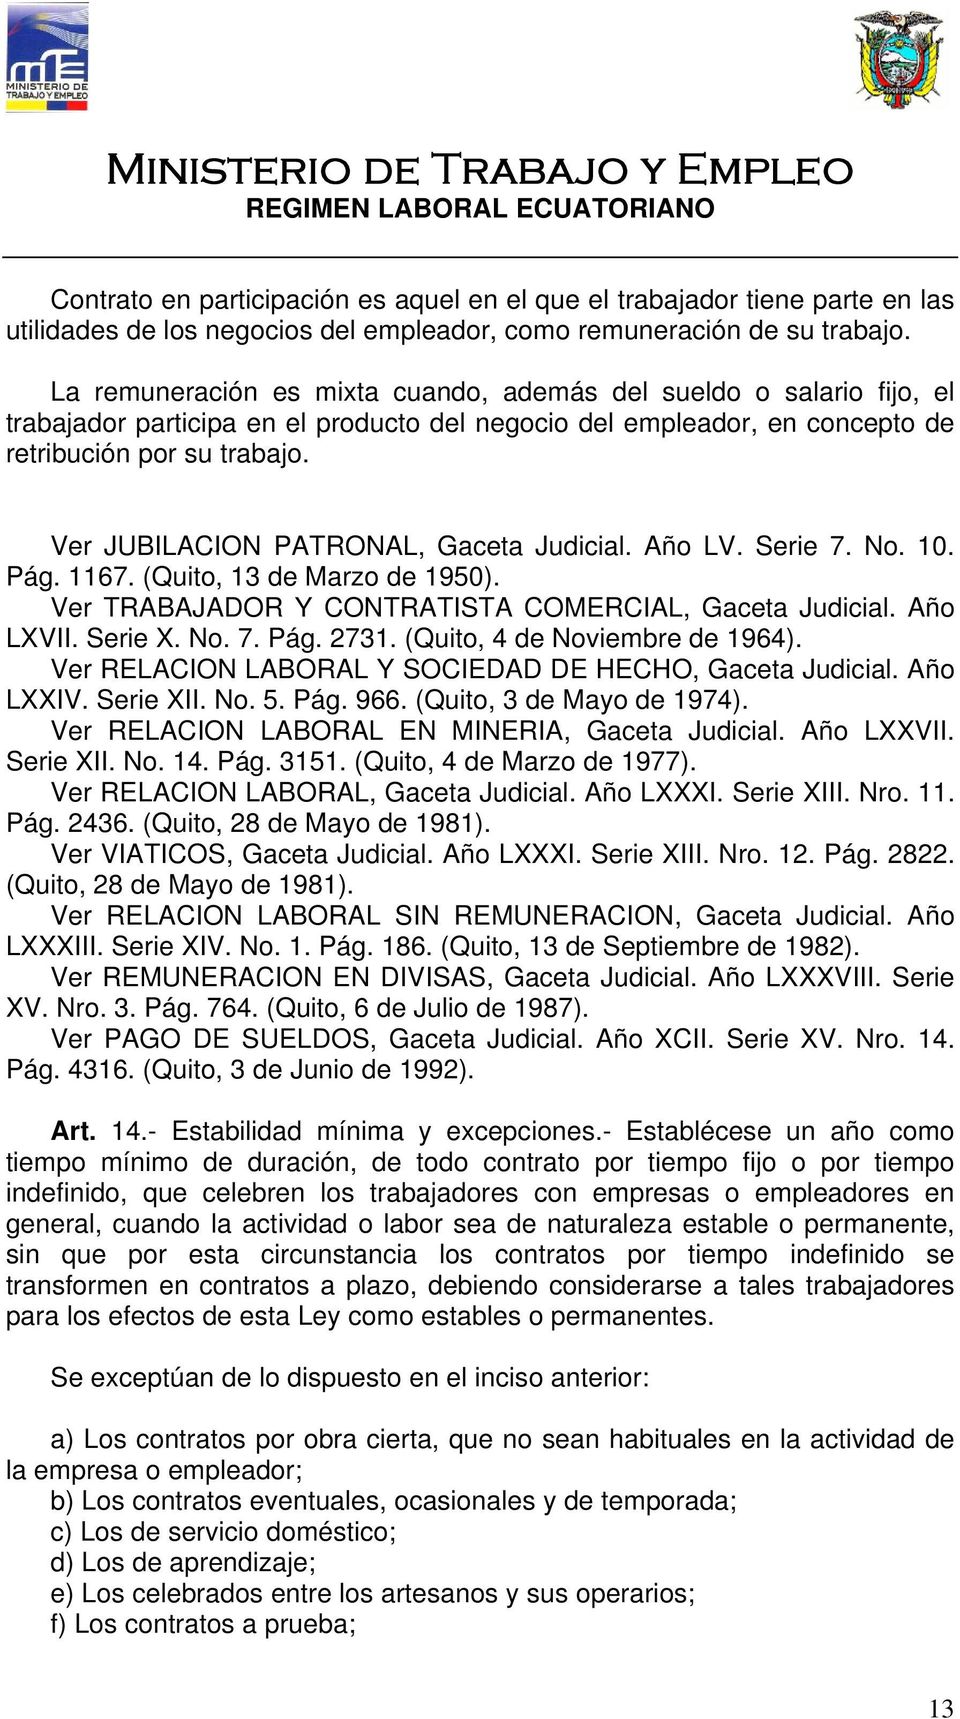 Ver JUBILACION PATRONAL, Gaceta Judicial. Año LV. Serie 7. No. 10. Pág. 1167. (Quito, 13 de Marzo de 1950). Ver TRABAJADOR Y CONTRATISTA COMERCIAL, Gaceta Judicial. Año LXVII. Serie X. No. 7. Pág. 2731.